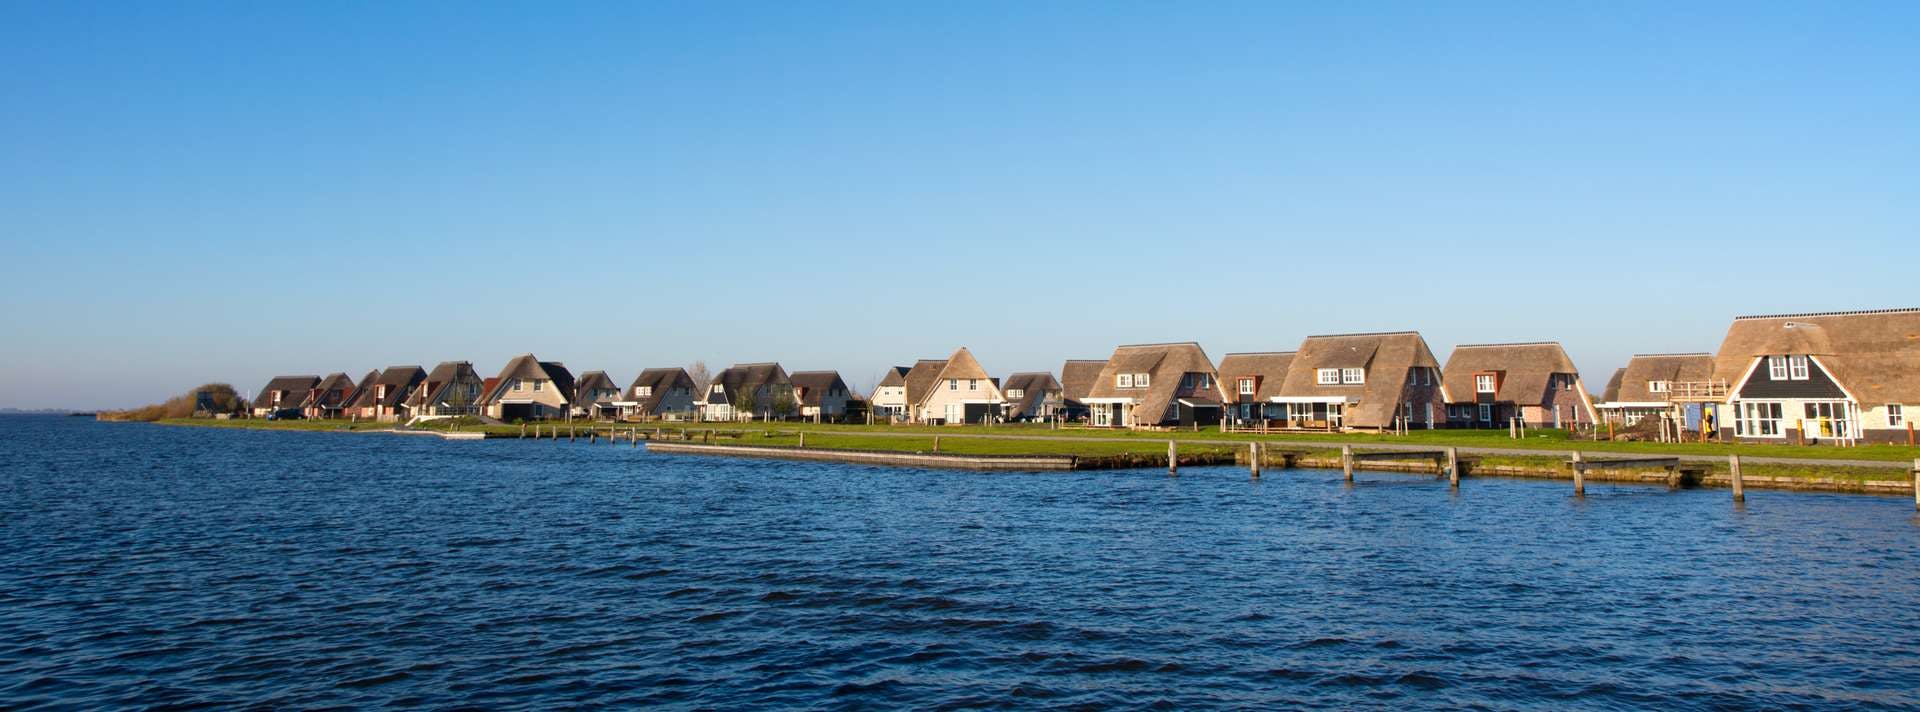 Luxe vakantiepark in Nederland